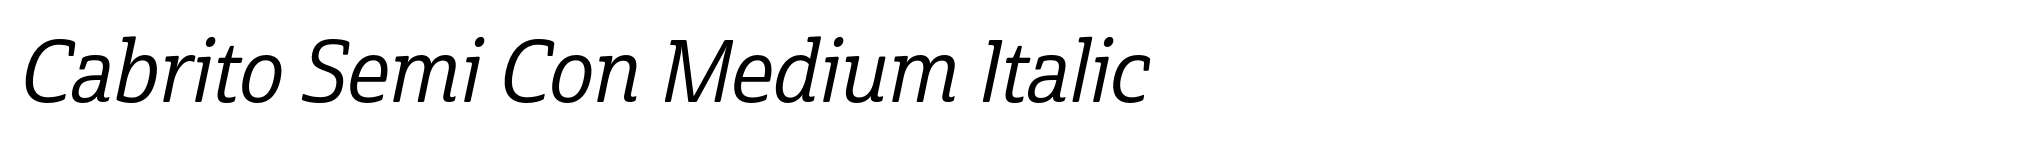 Cabrito Semi Con Medium Italic image